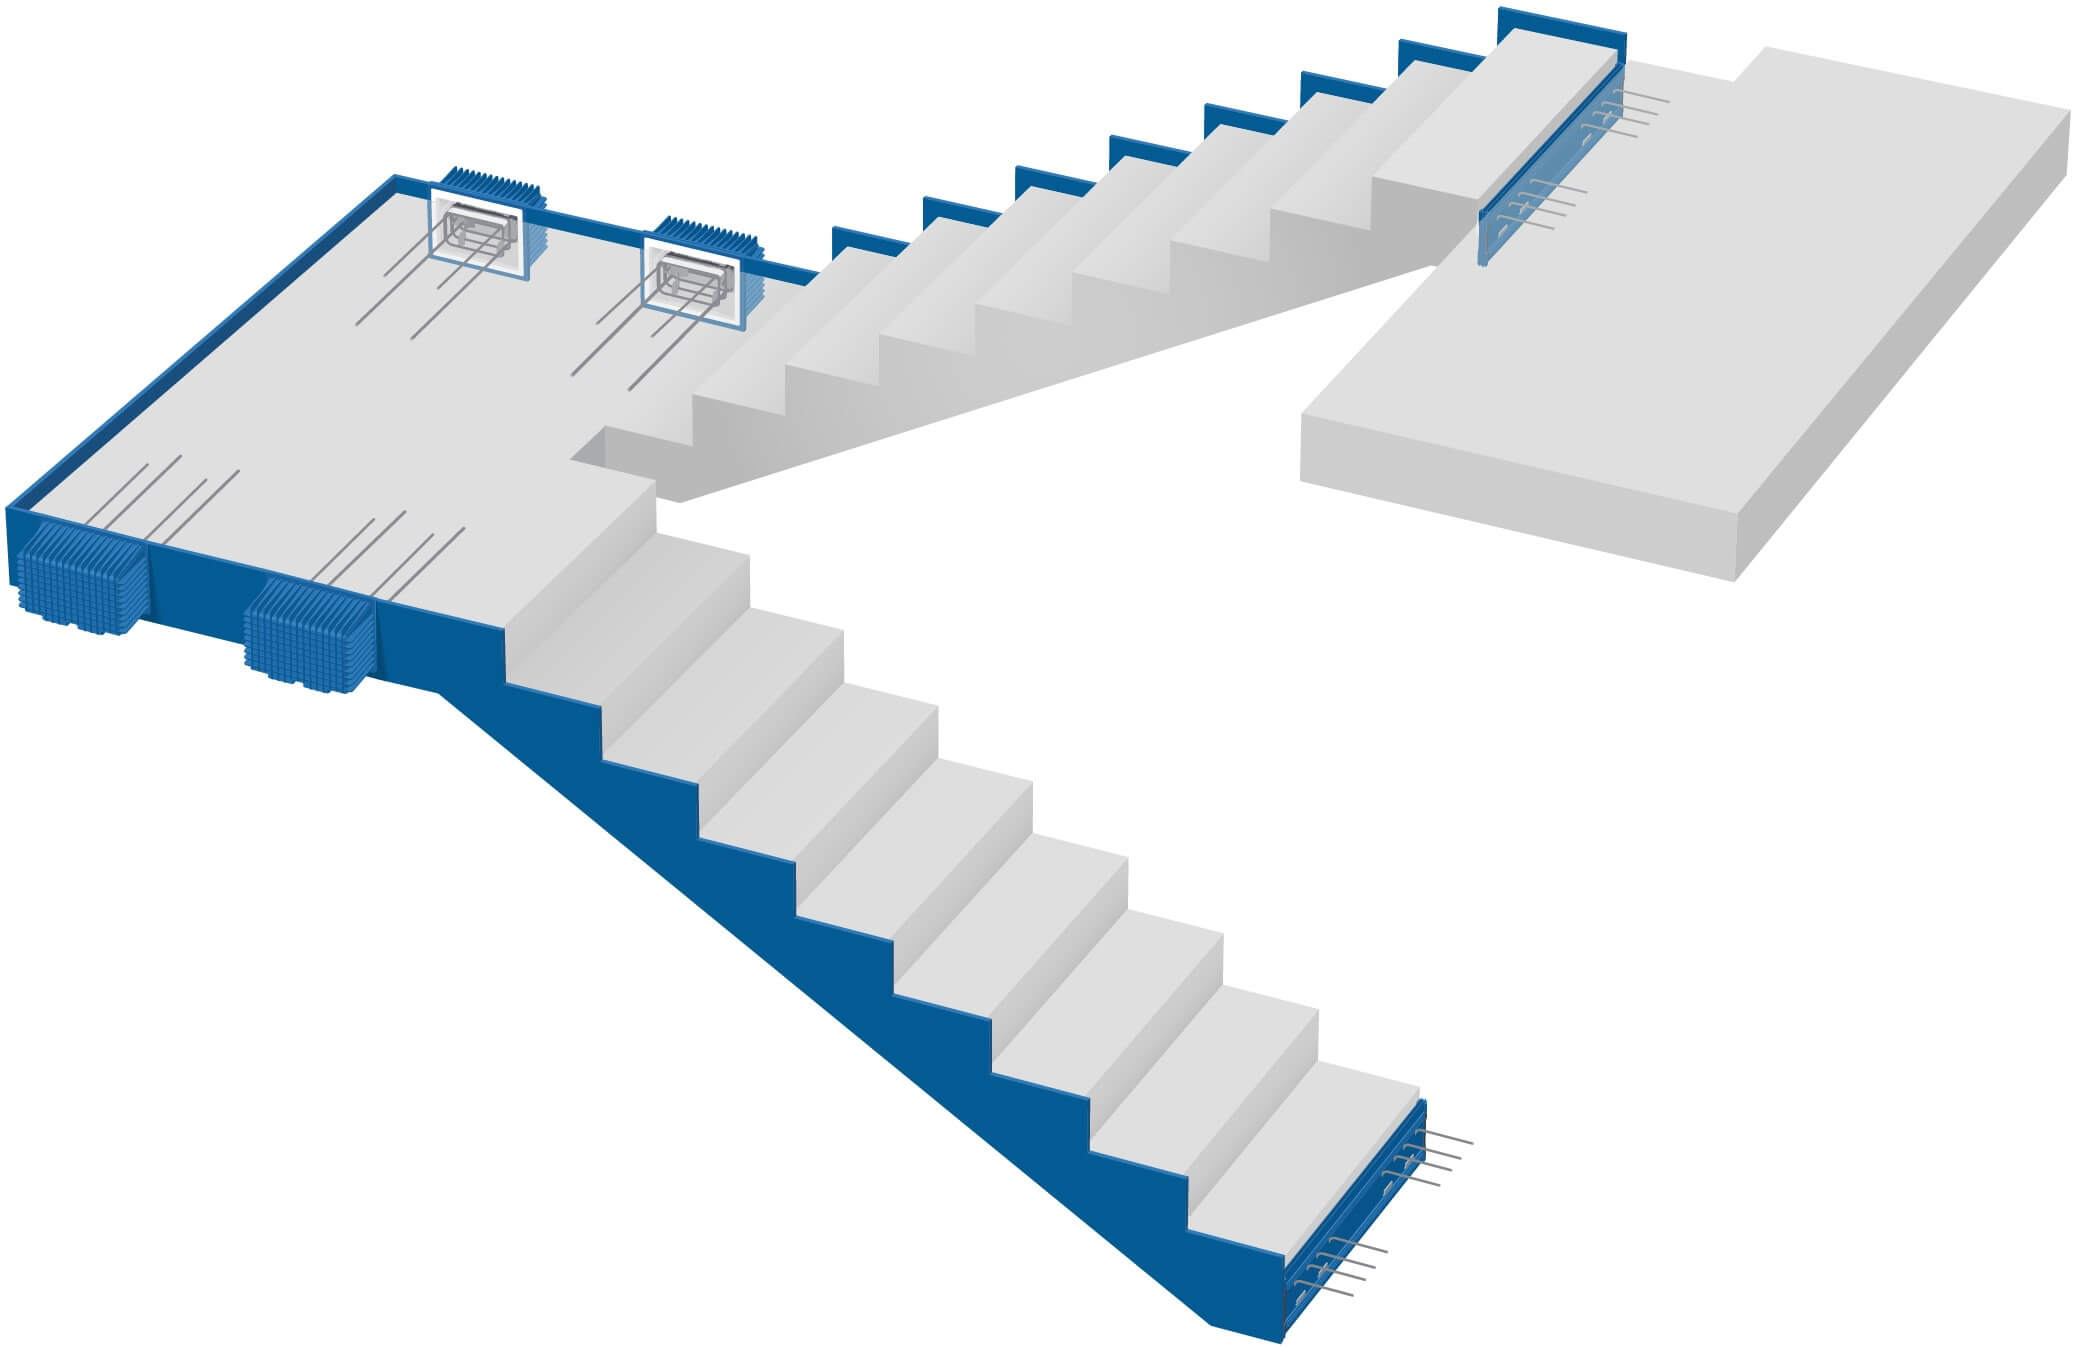 Tramo de escalera recto, tramo de escalera y tarima desacoplados: optimización para hormigón in situ